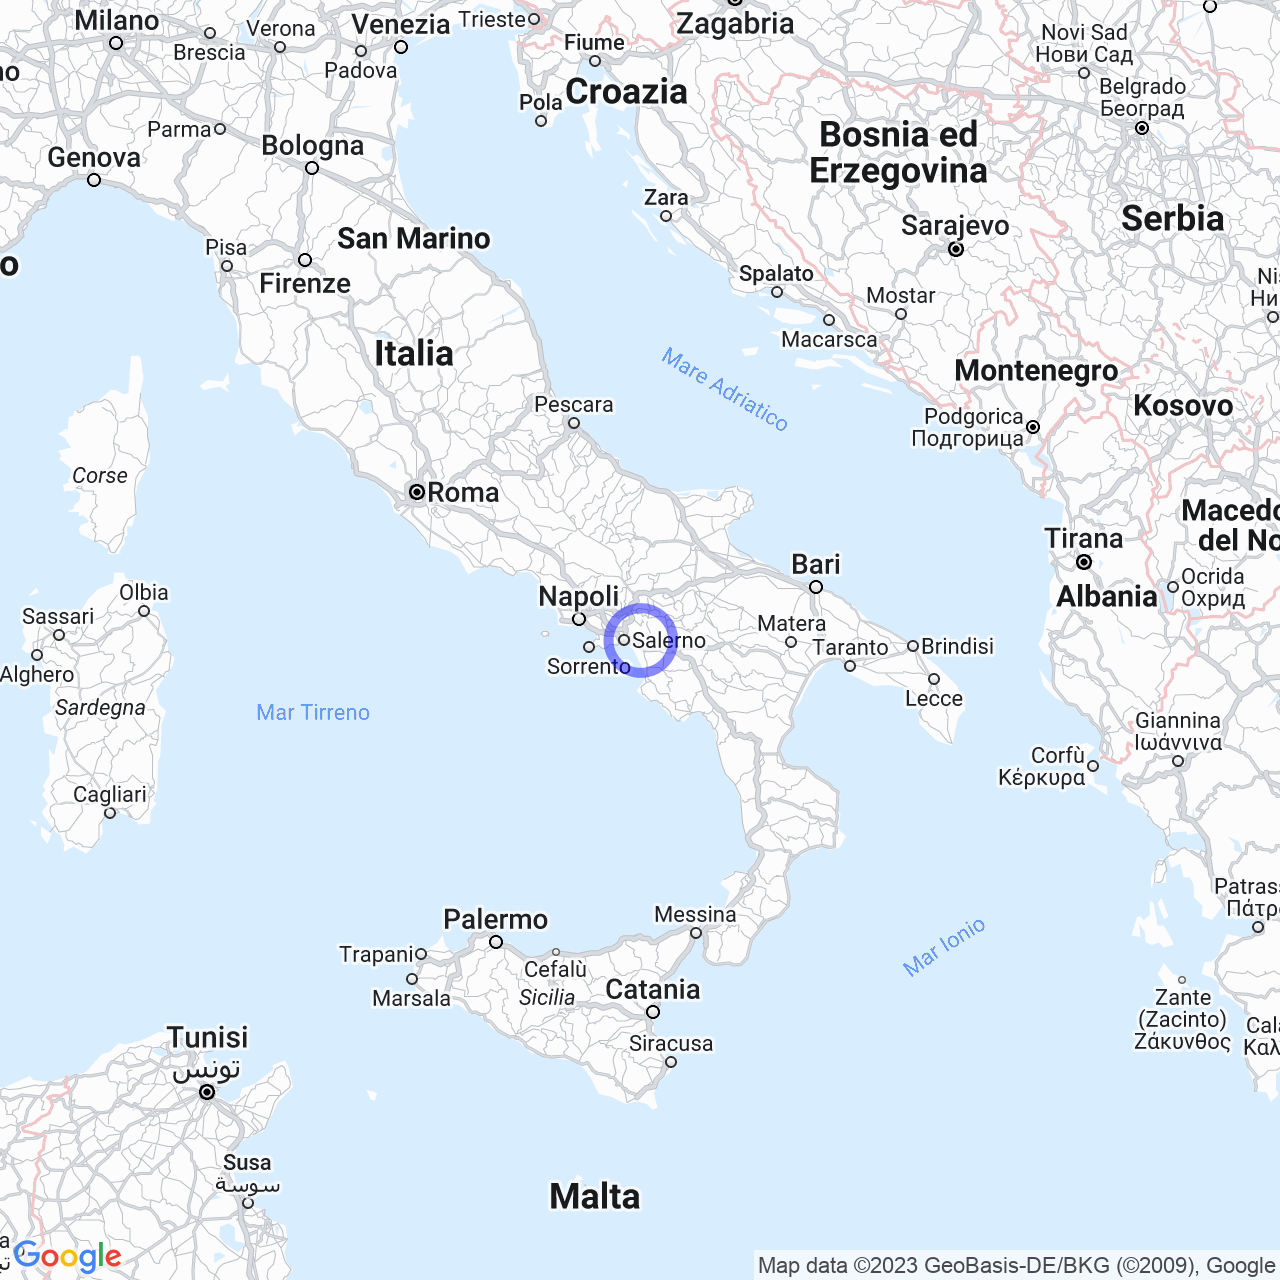 Montecorvino Pugliano: storia, geografia e clima in Campania